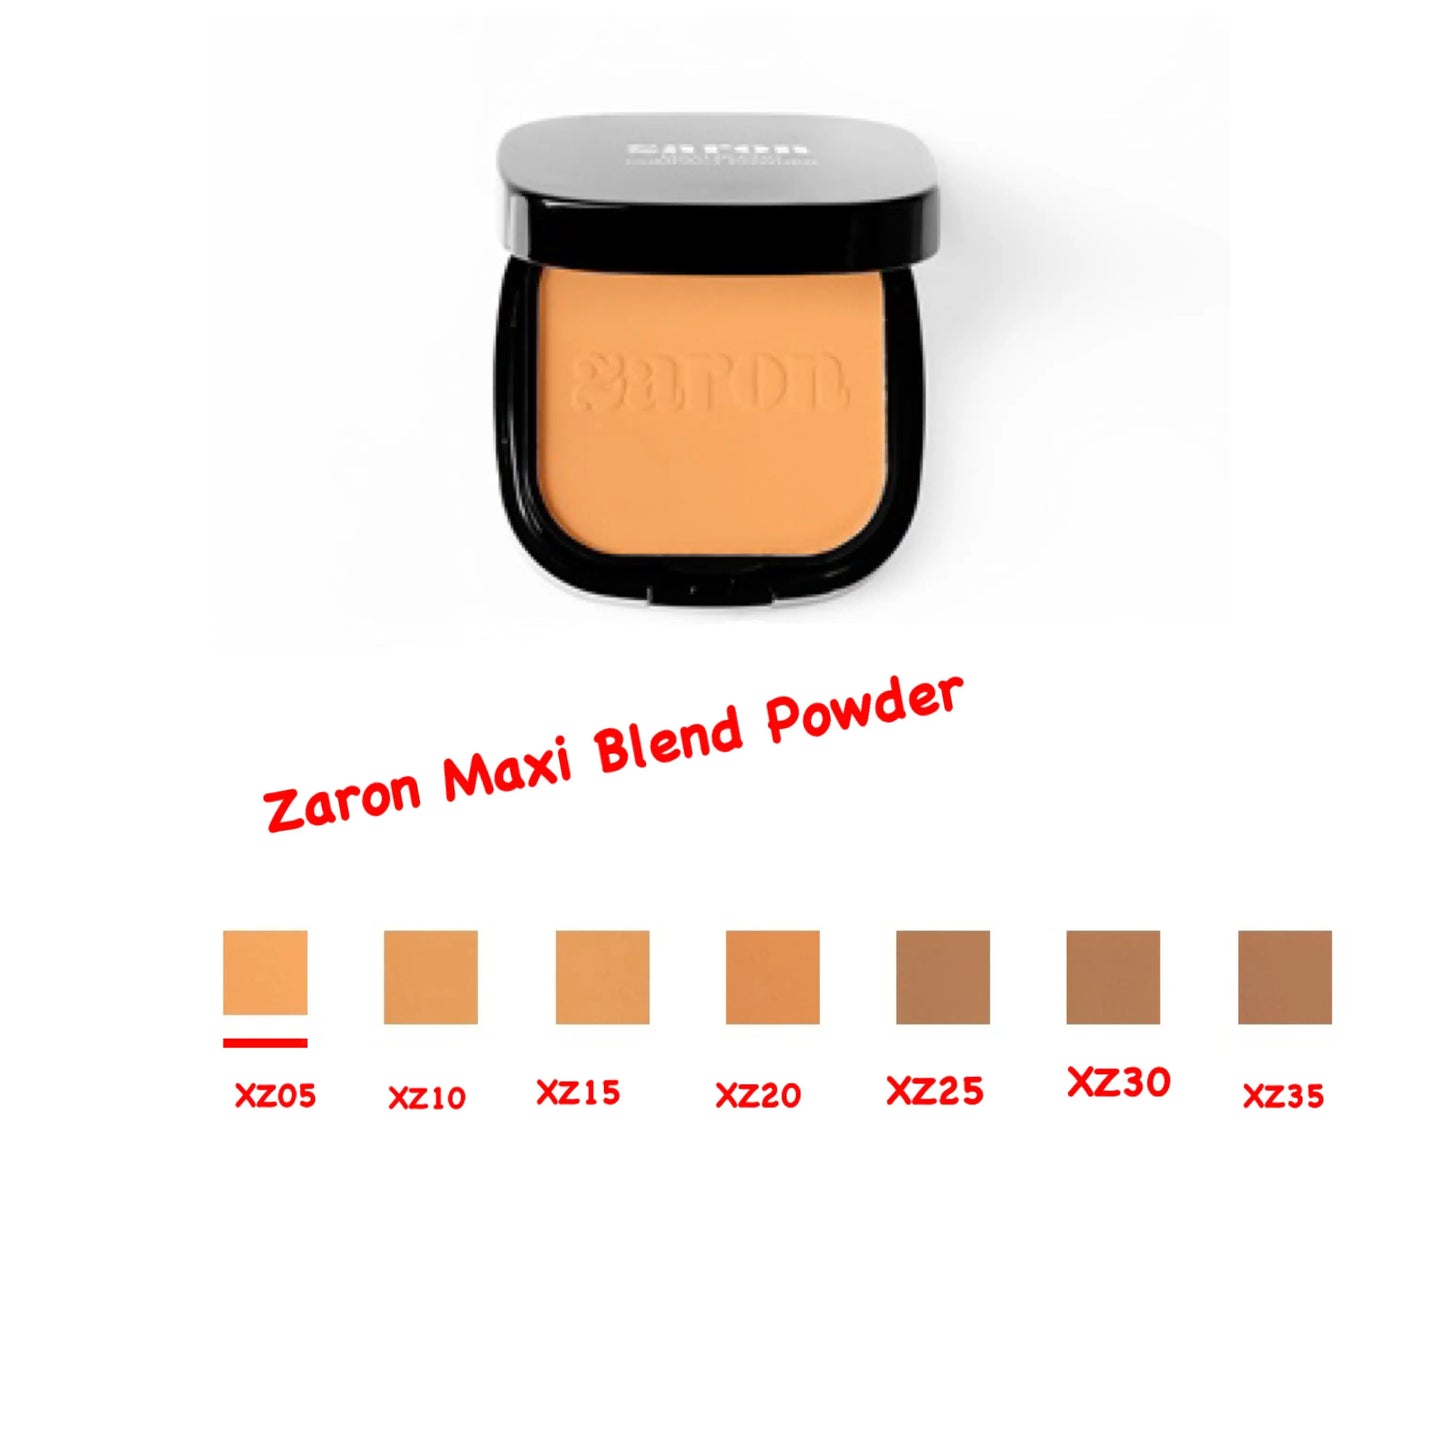 Zaron Maxi Blend Powder La Mimz Beauty & Fashion Store